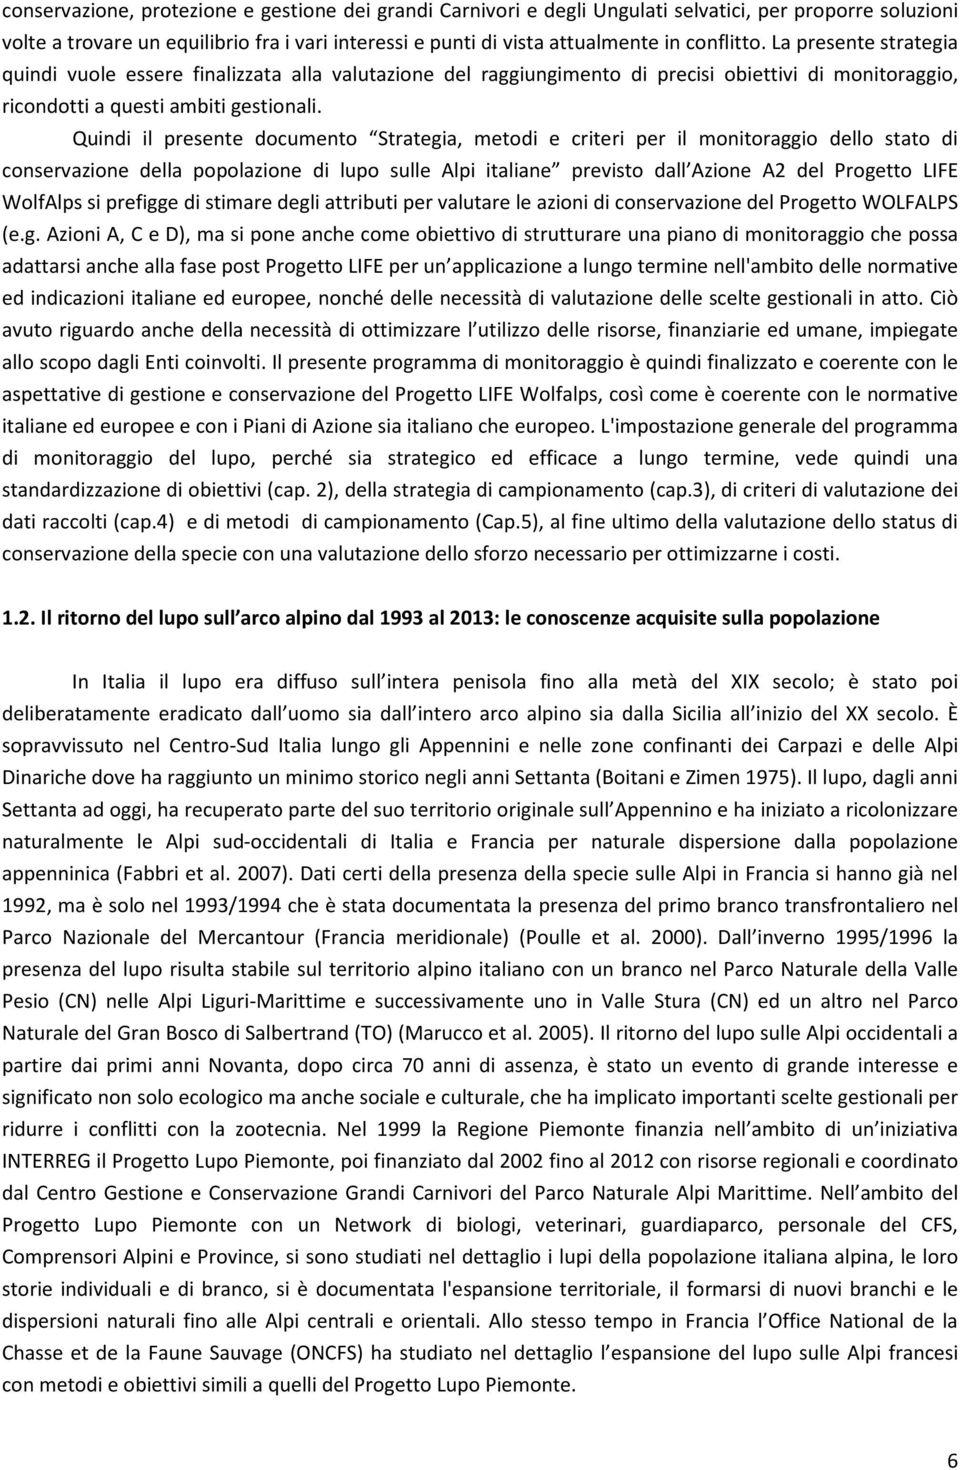 Quindi il presente documento Strategia, metodi e criteri per il monitoraggio dello stato di conservazione della popolazione di lupo sulle Alpi italiane previsto dall Azione A2 del Progetto LIFE